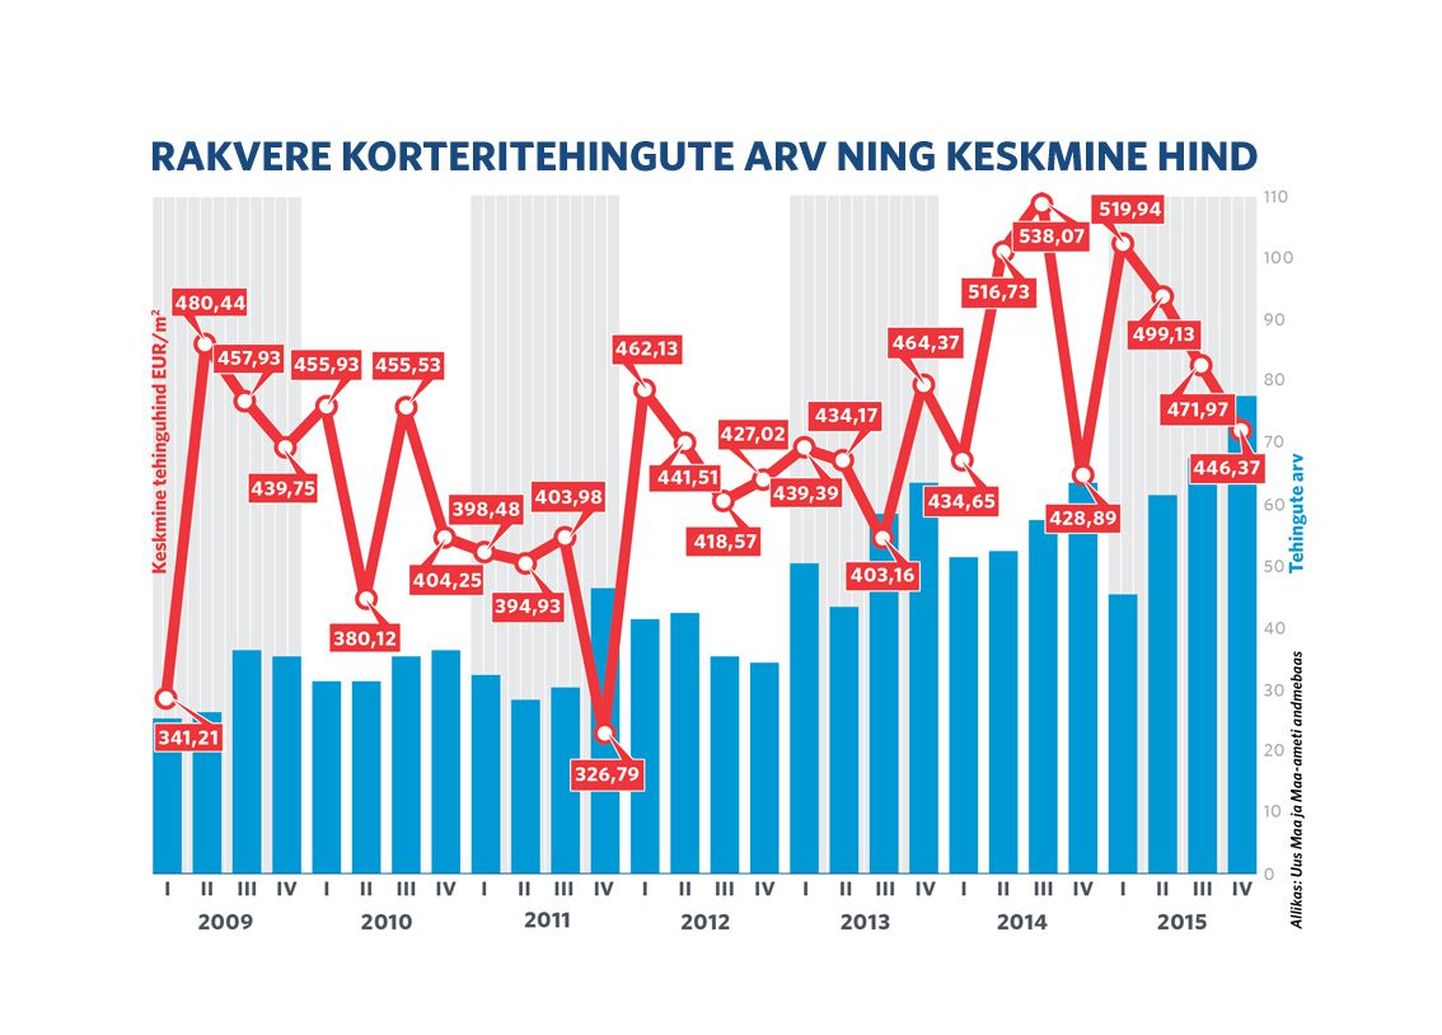 Rakvere korteritehingute arv ning keskmine hind aastatel 2009-2015.